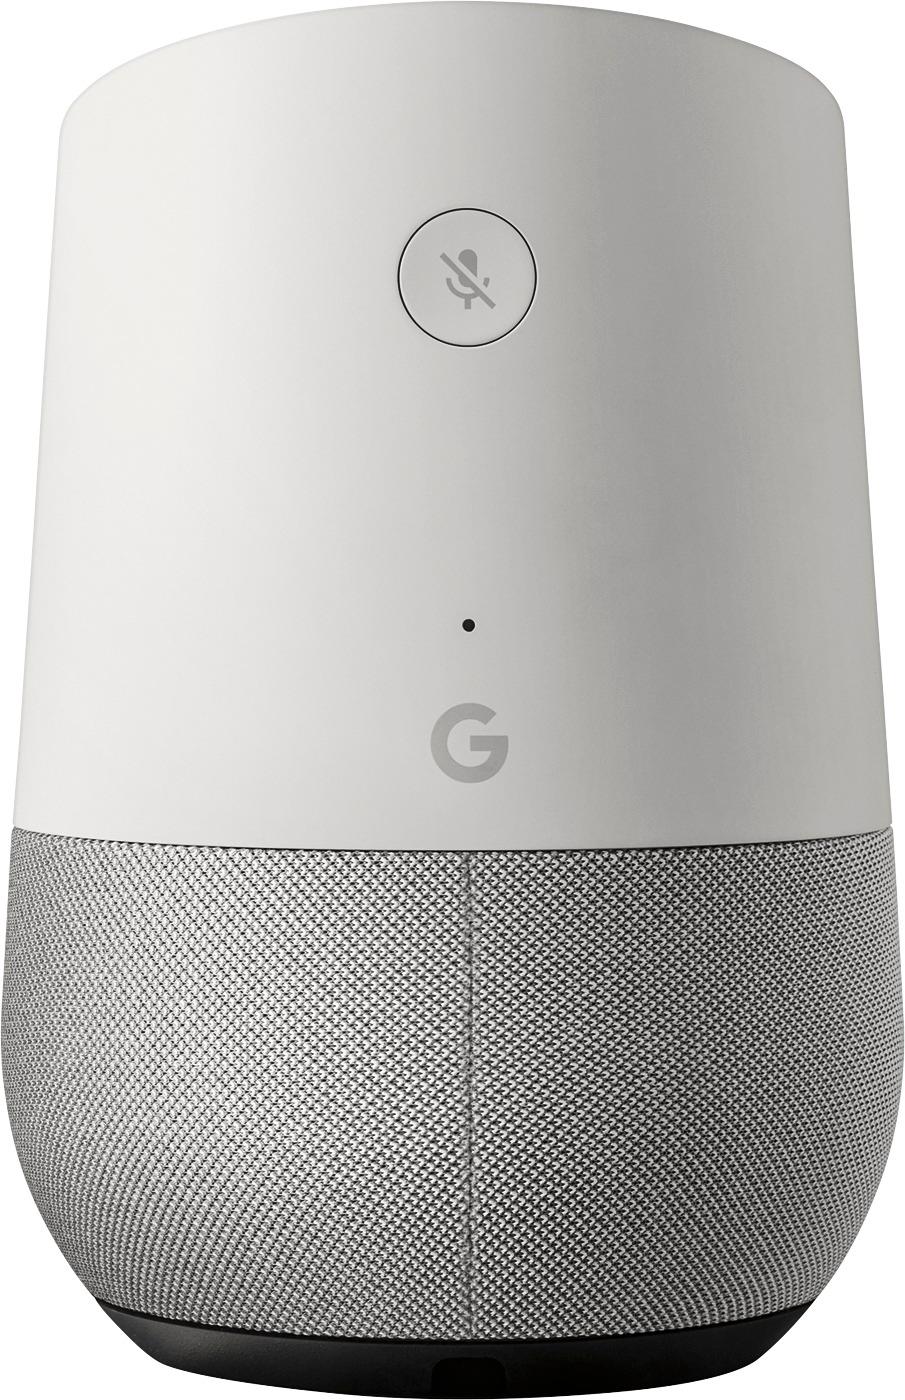 Découvrez Google Home - Smart Speaker